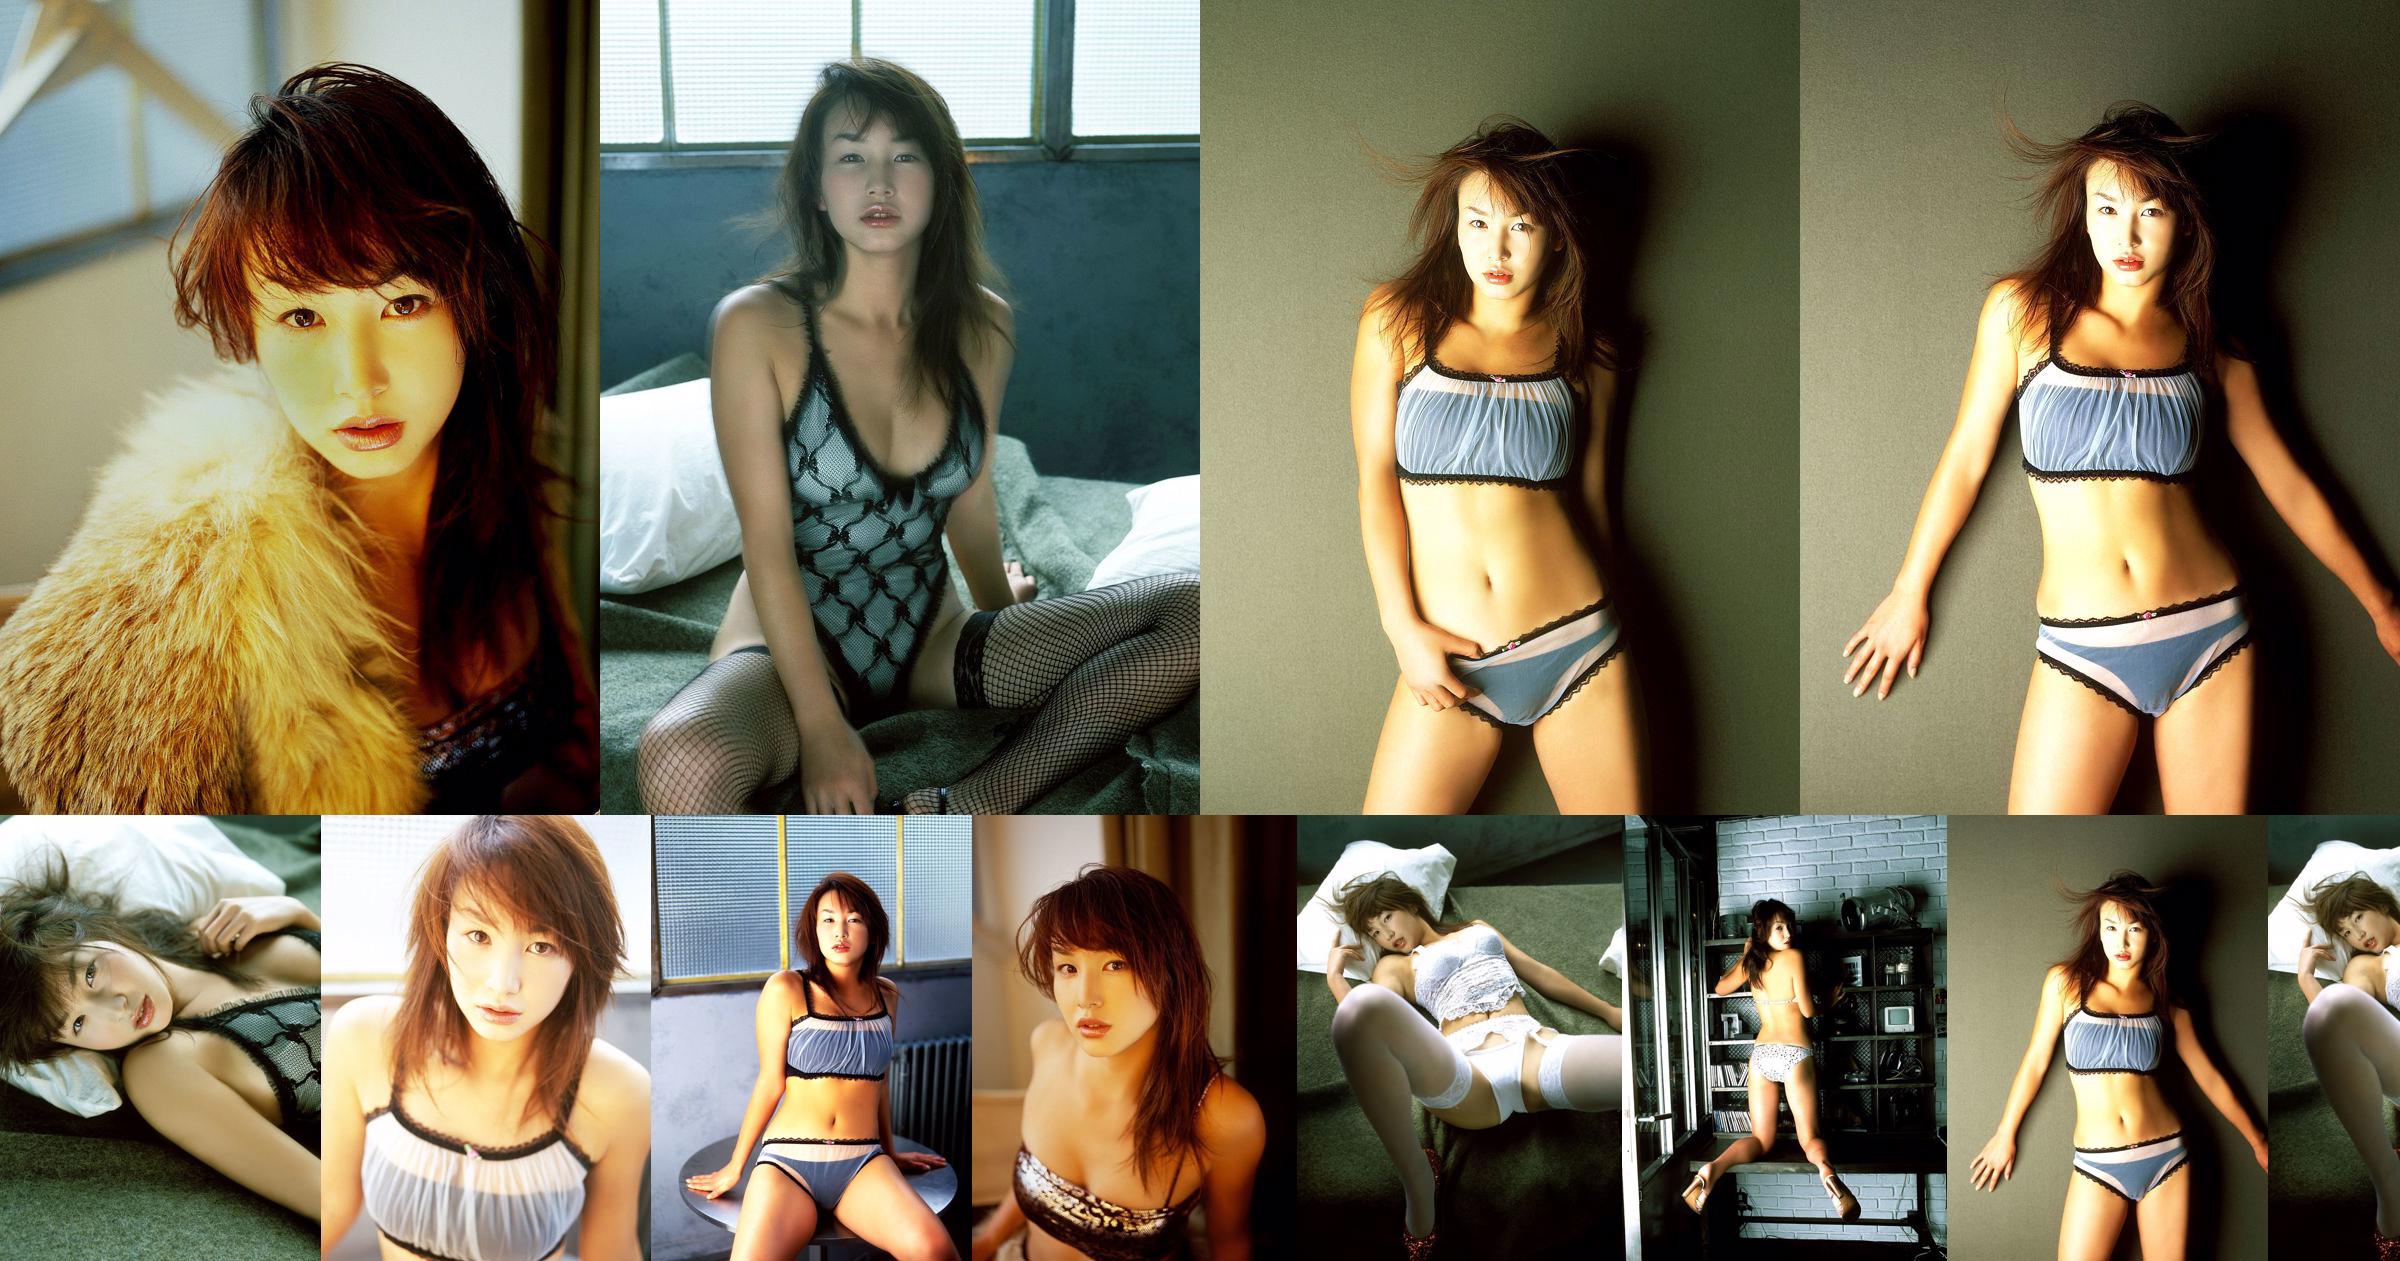 [X-City] Dokkiri Queen No.016 Momo Nakamura / Momo Nakamura Profile No.bfb92f Page 3